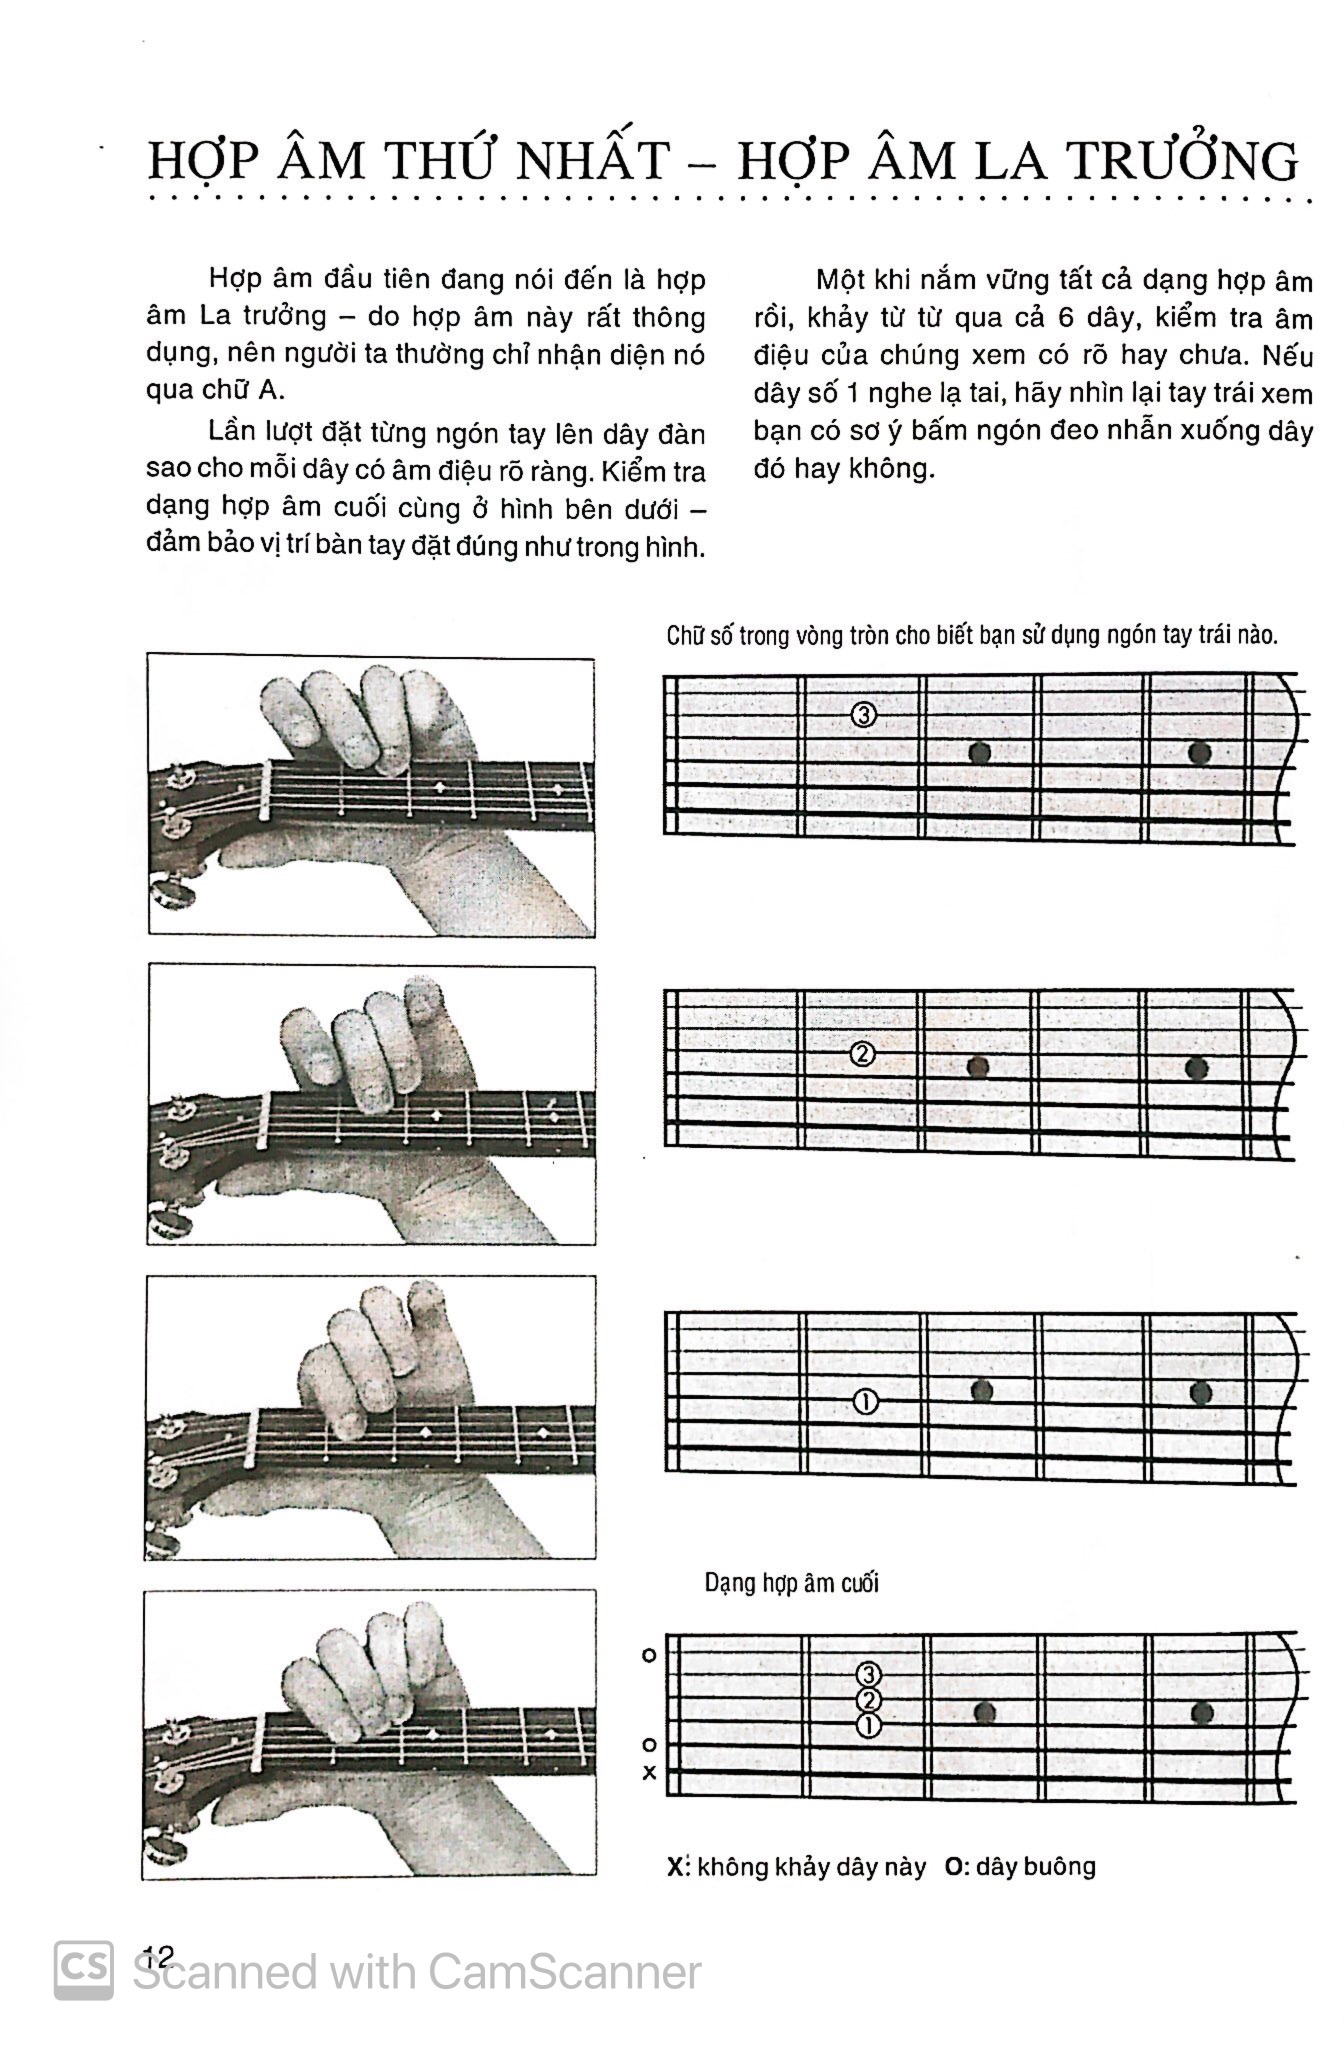 Chơi Đàn Guitar Bằng Hình Ảnh PDF